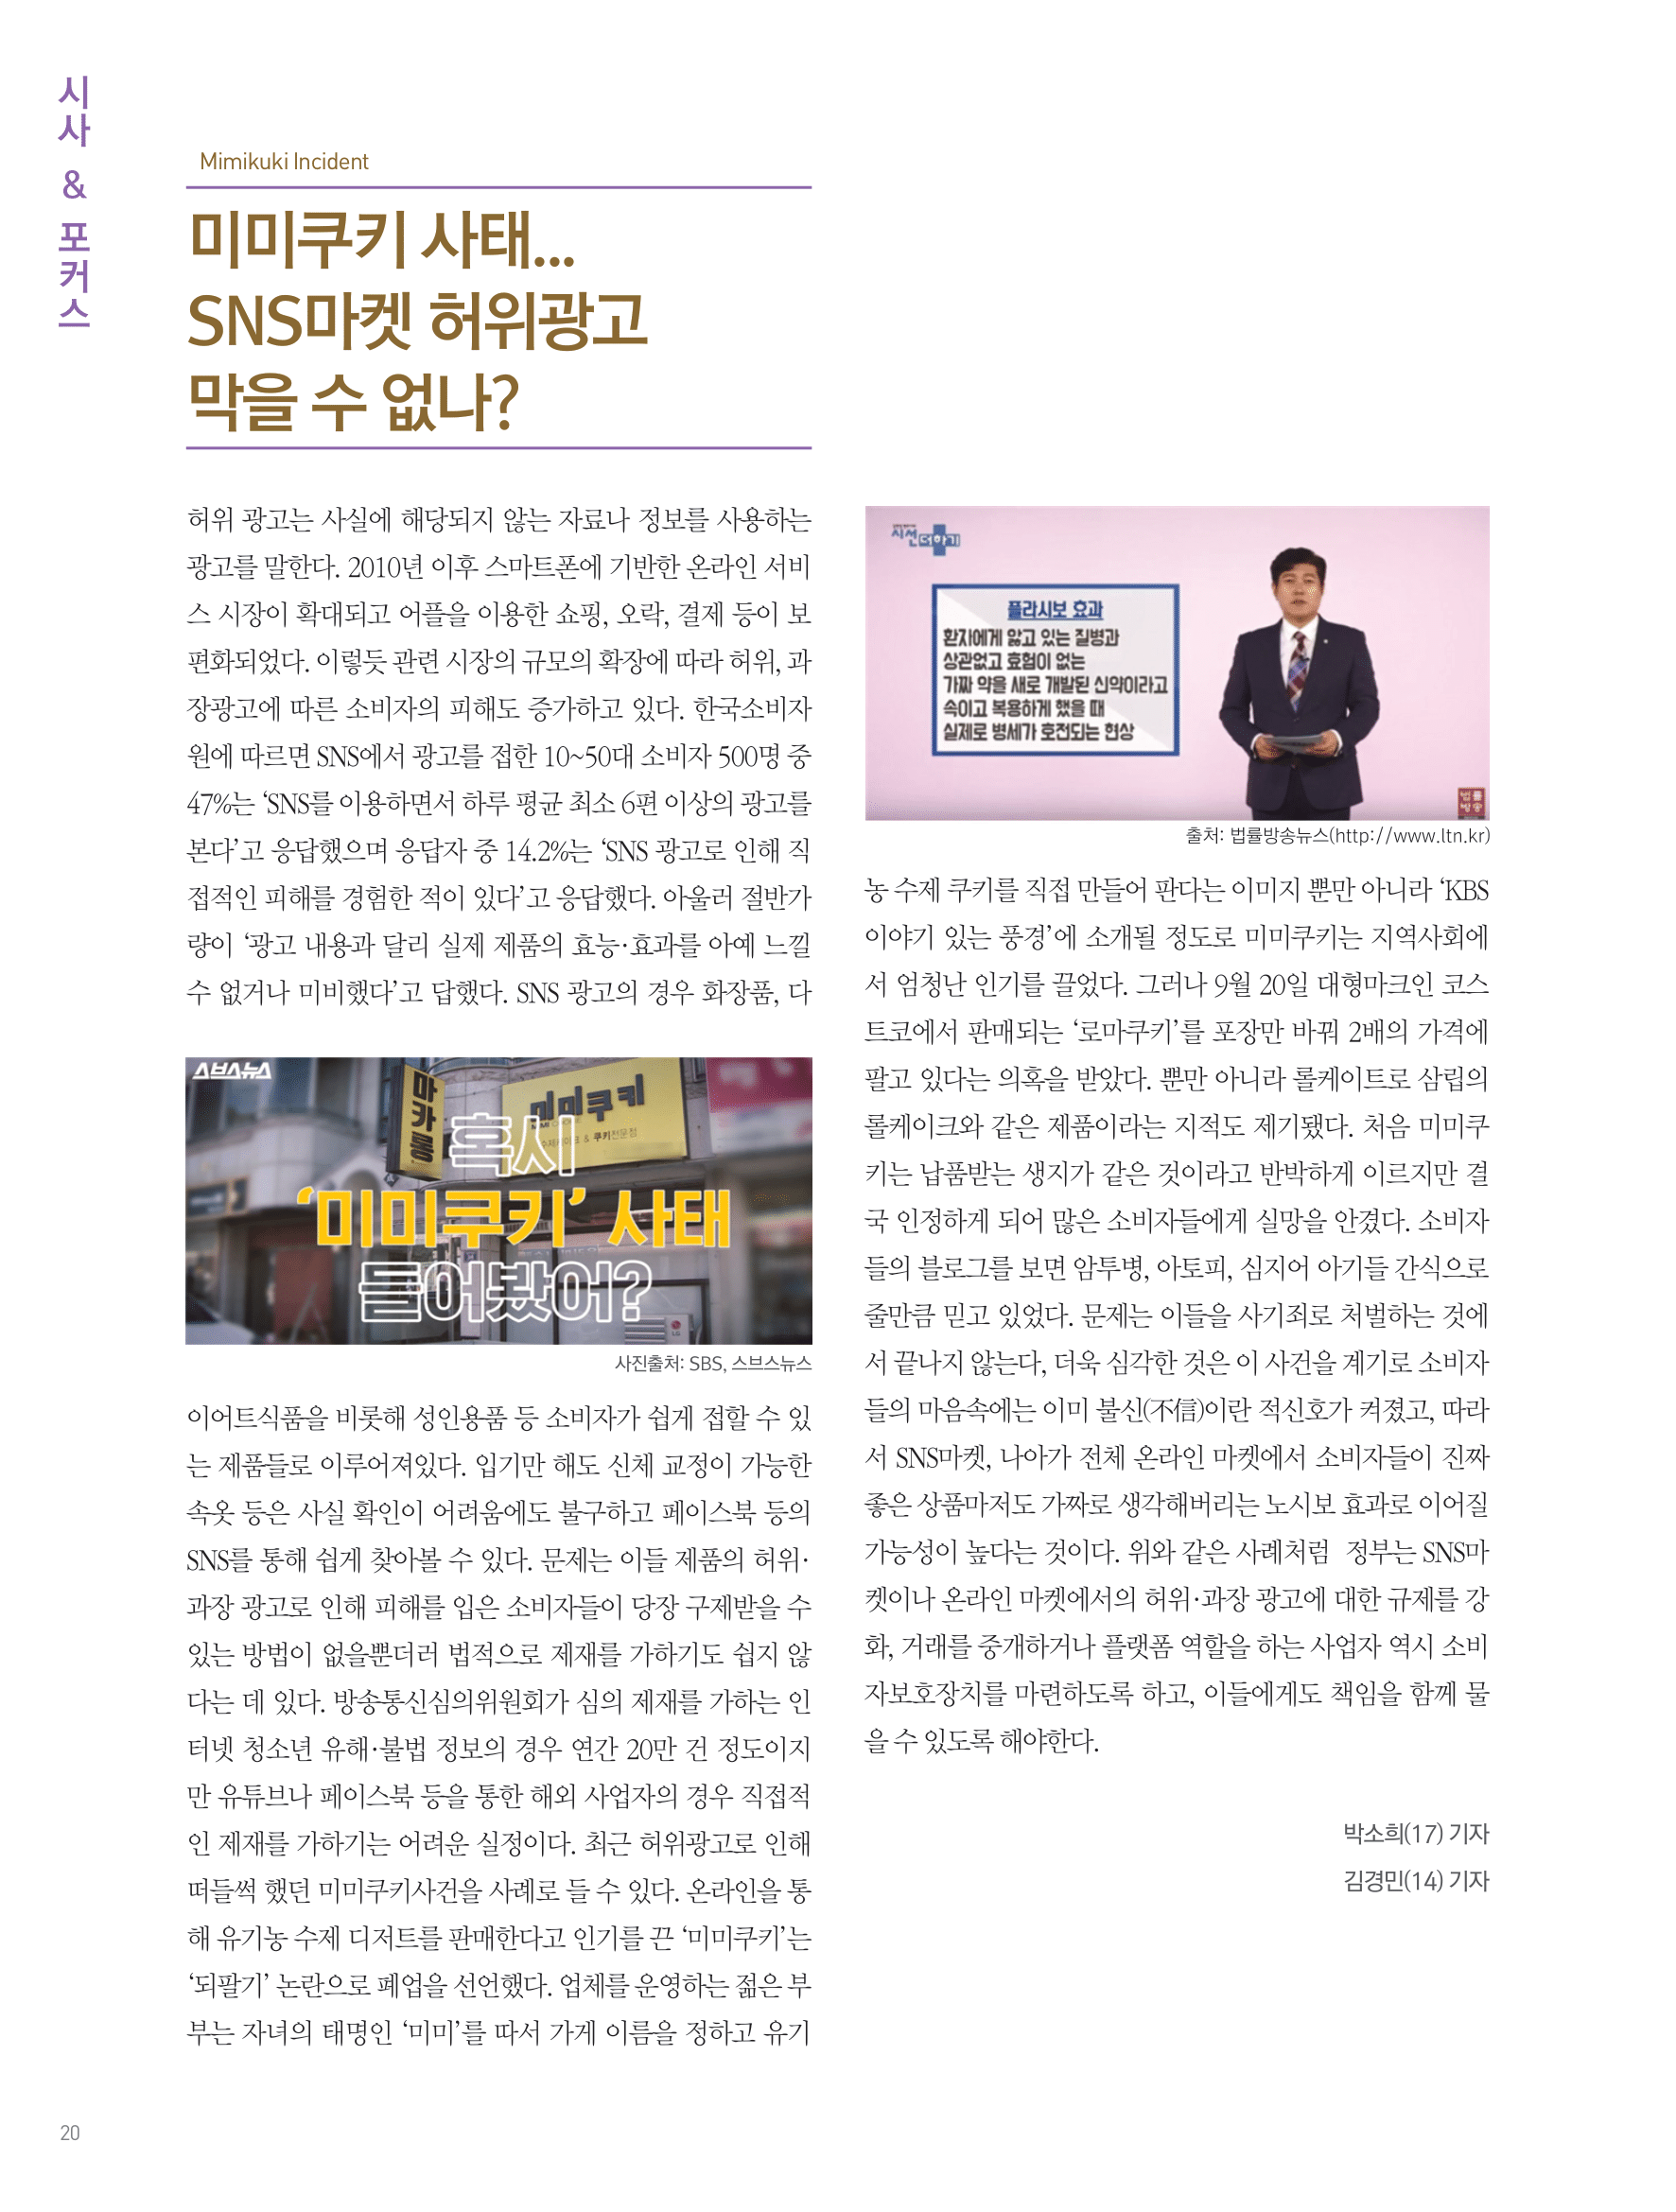 뜻새김 신문 72호 20